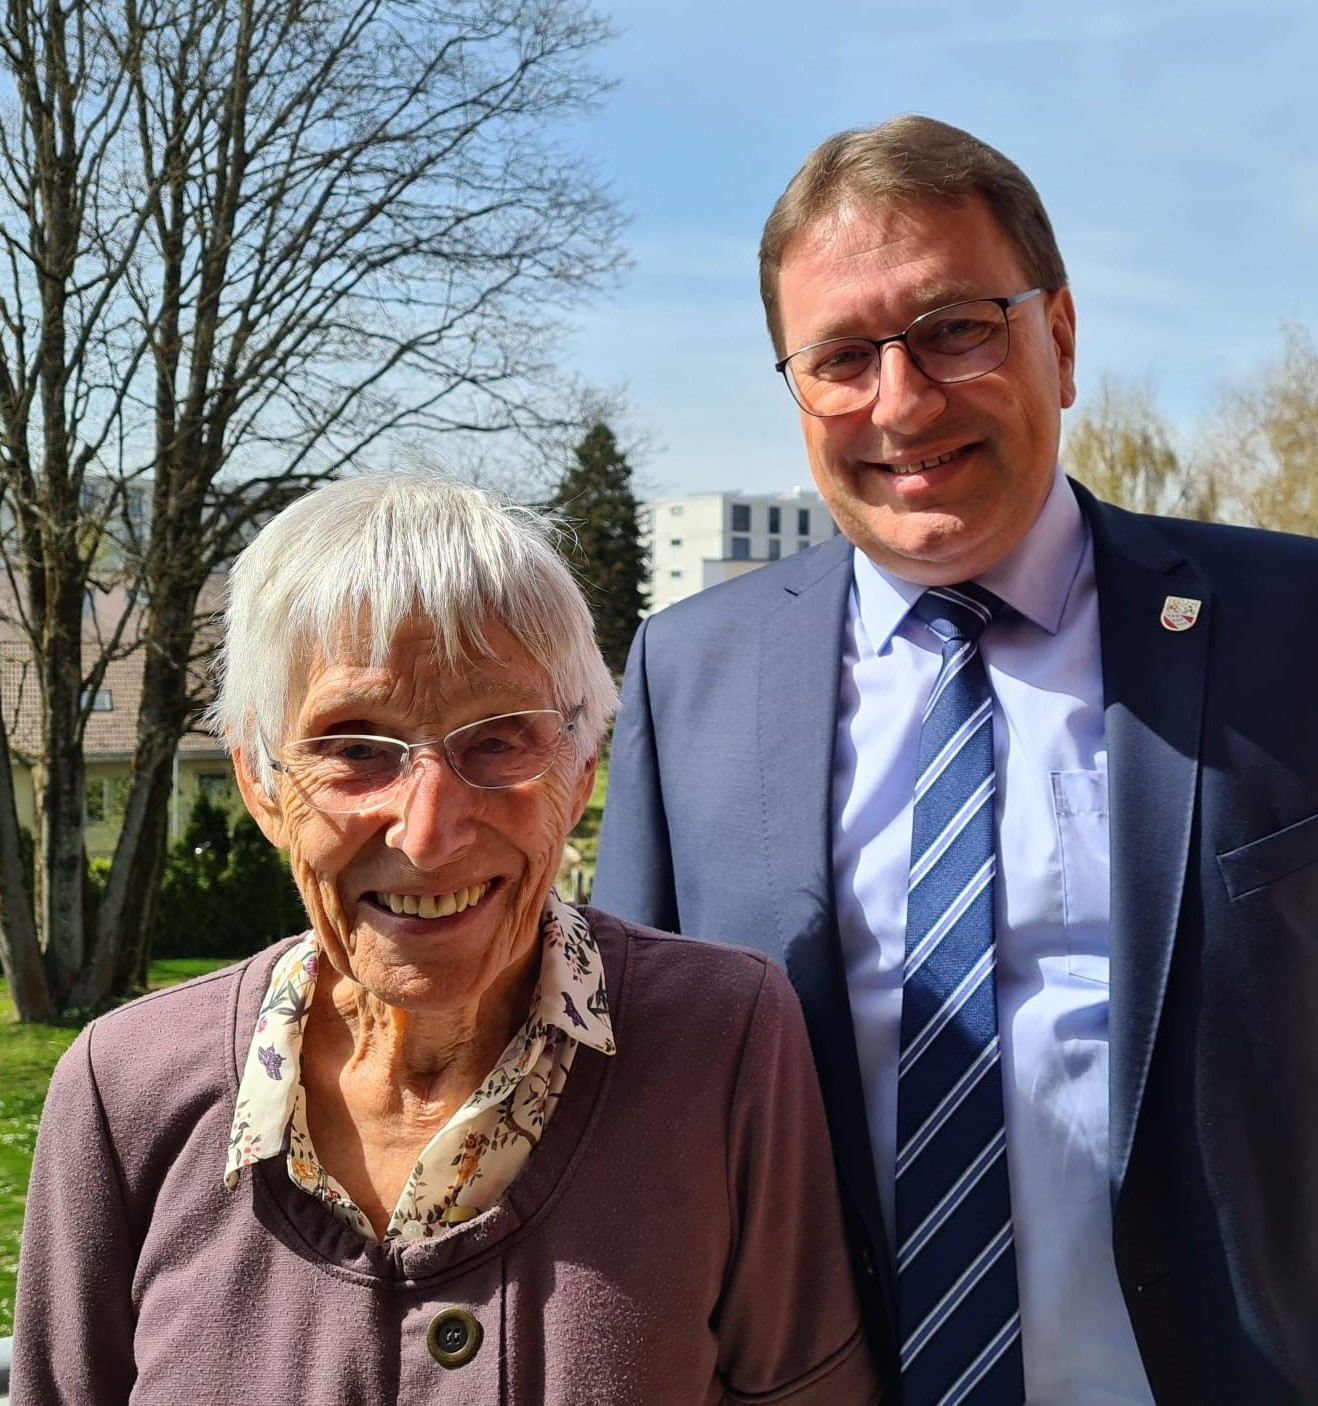 Bei bester Gesundheit durfte Frau Katharina Büchi am 12. April 2022, ihren 90. Geburtstag feiern.

Die Gemeindebehörden gratulieren herzlich dazu!